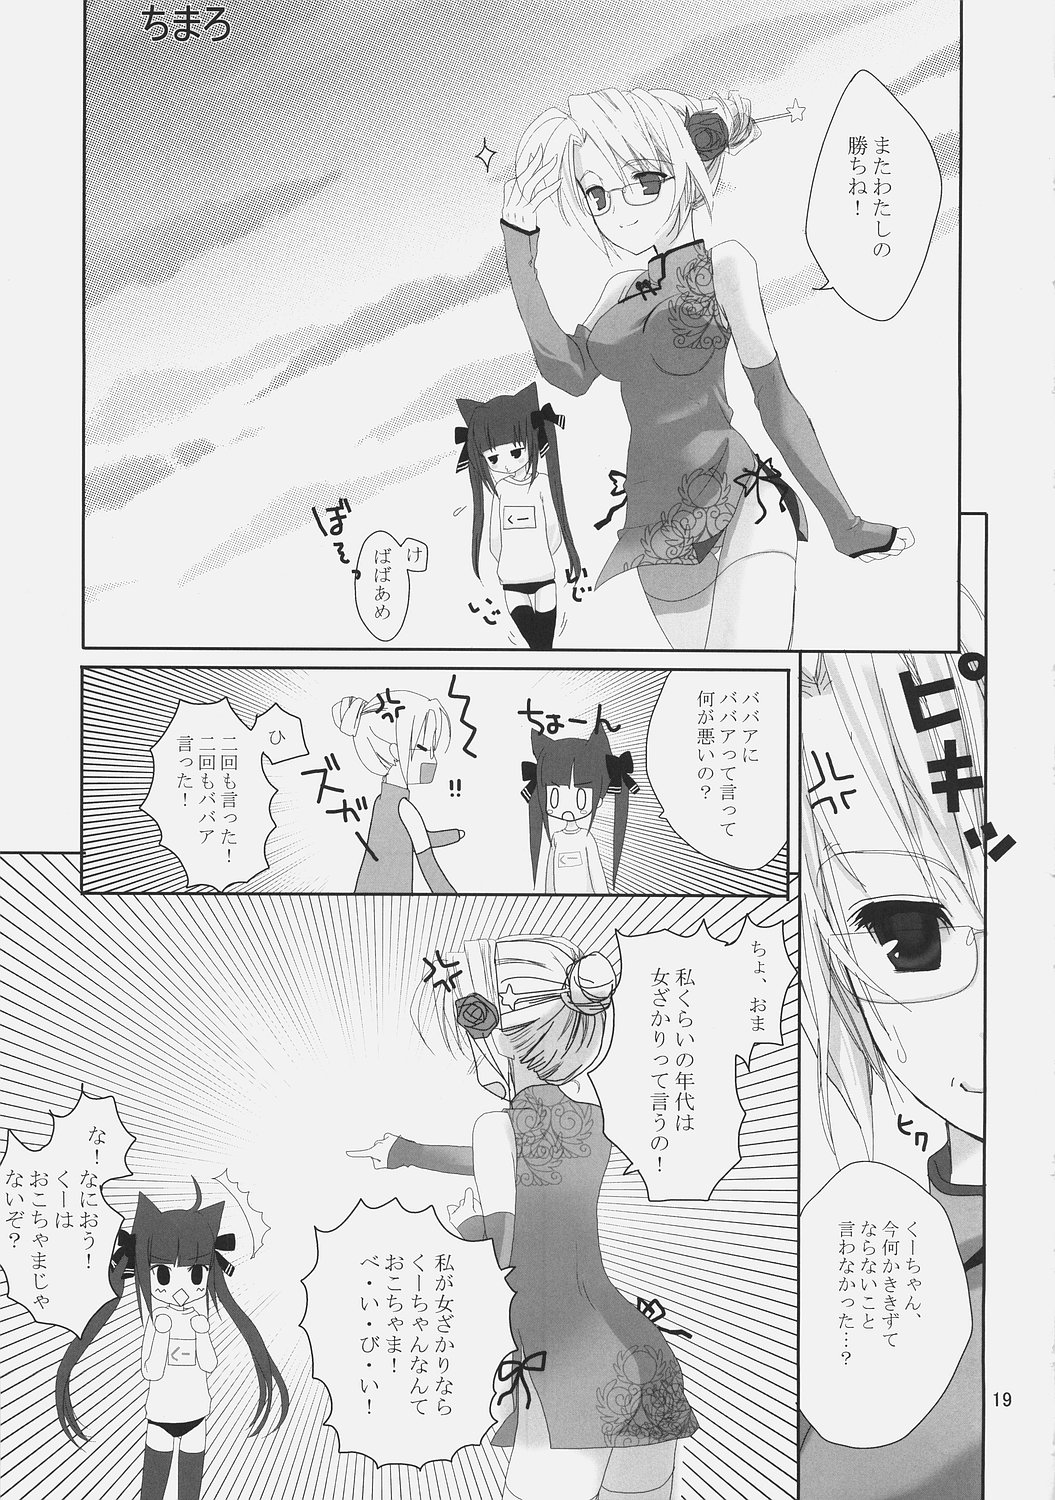 (ComiComi9) [Umi No Sachi Teishoku, Chimaroni?, Fake fur, (Kakifly, Chimaro, Furu)] PanPanPangya (Sukatto Golf Pangya) page 18 full